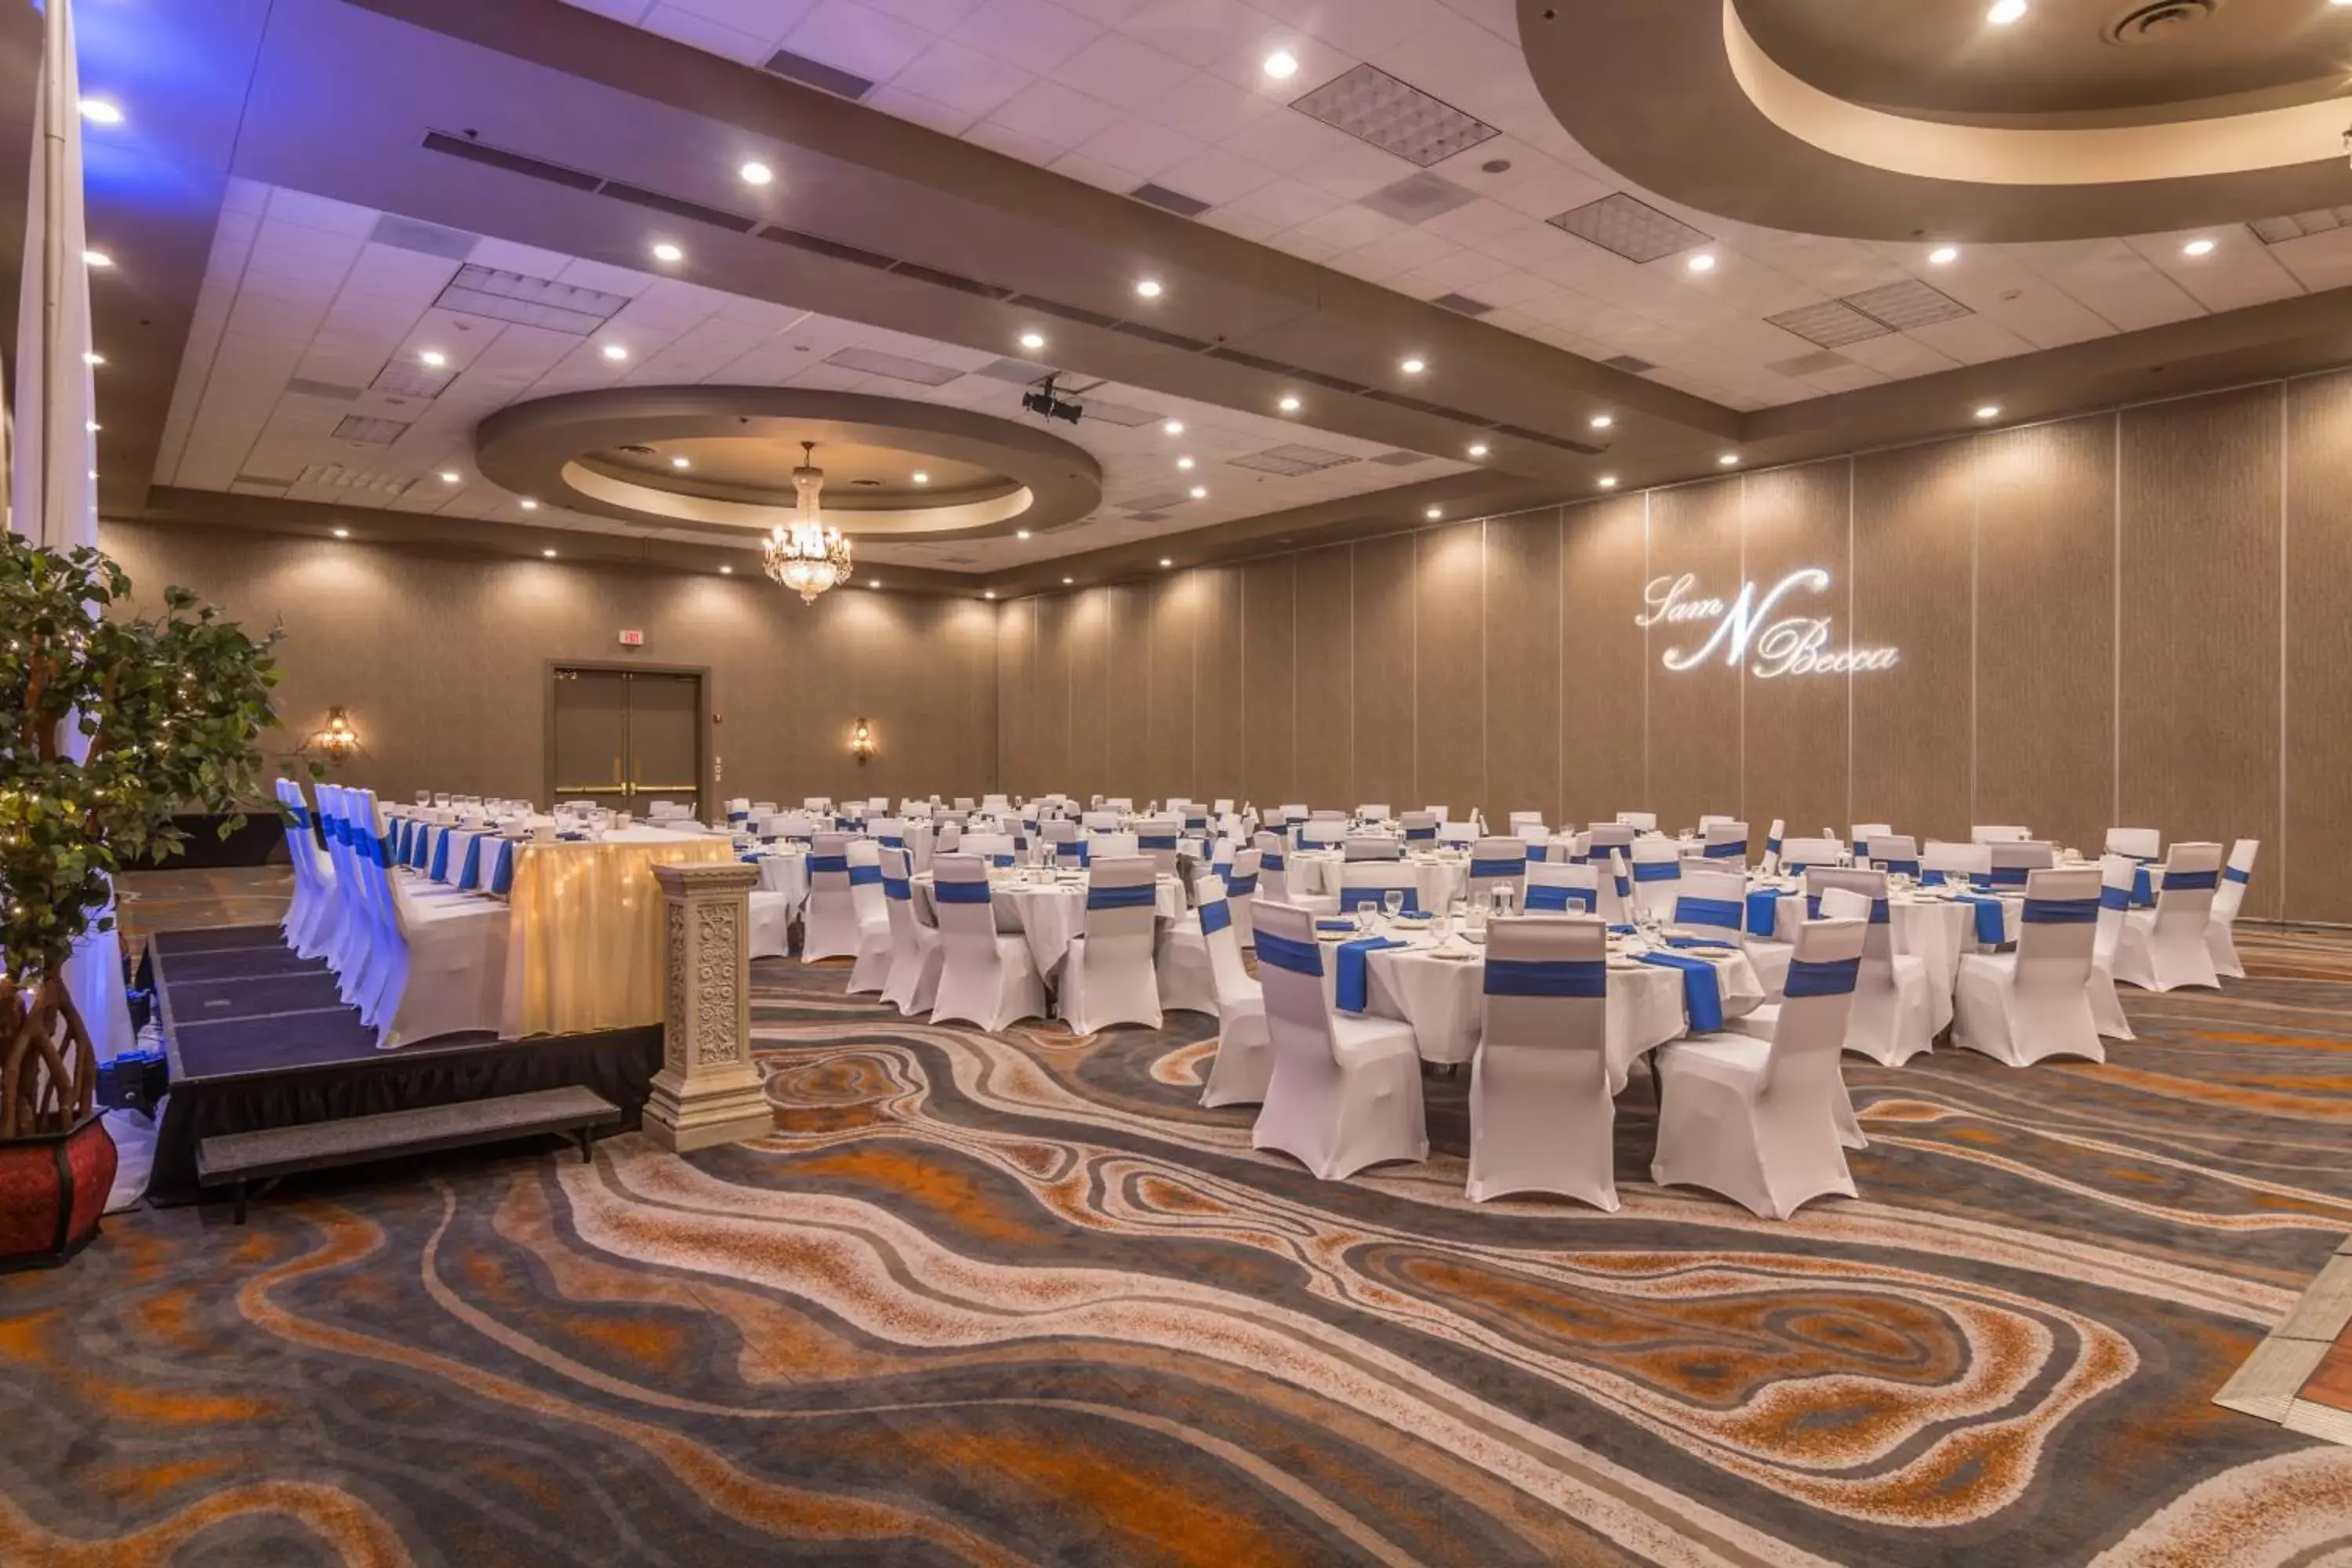 Banquet/Function facilities, Banquet Facilities in Delta Hotels by Marriott Fargo